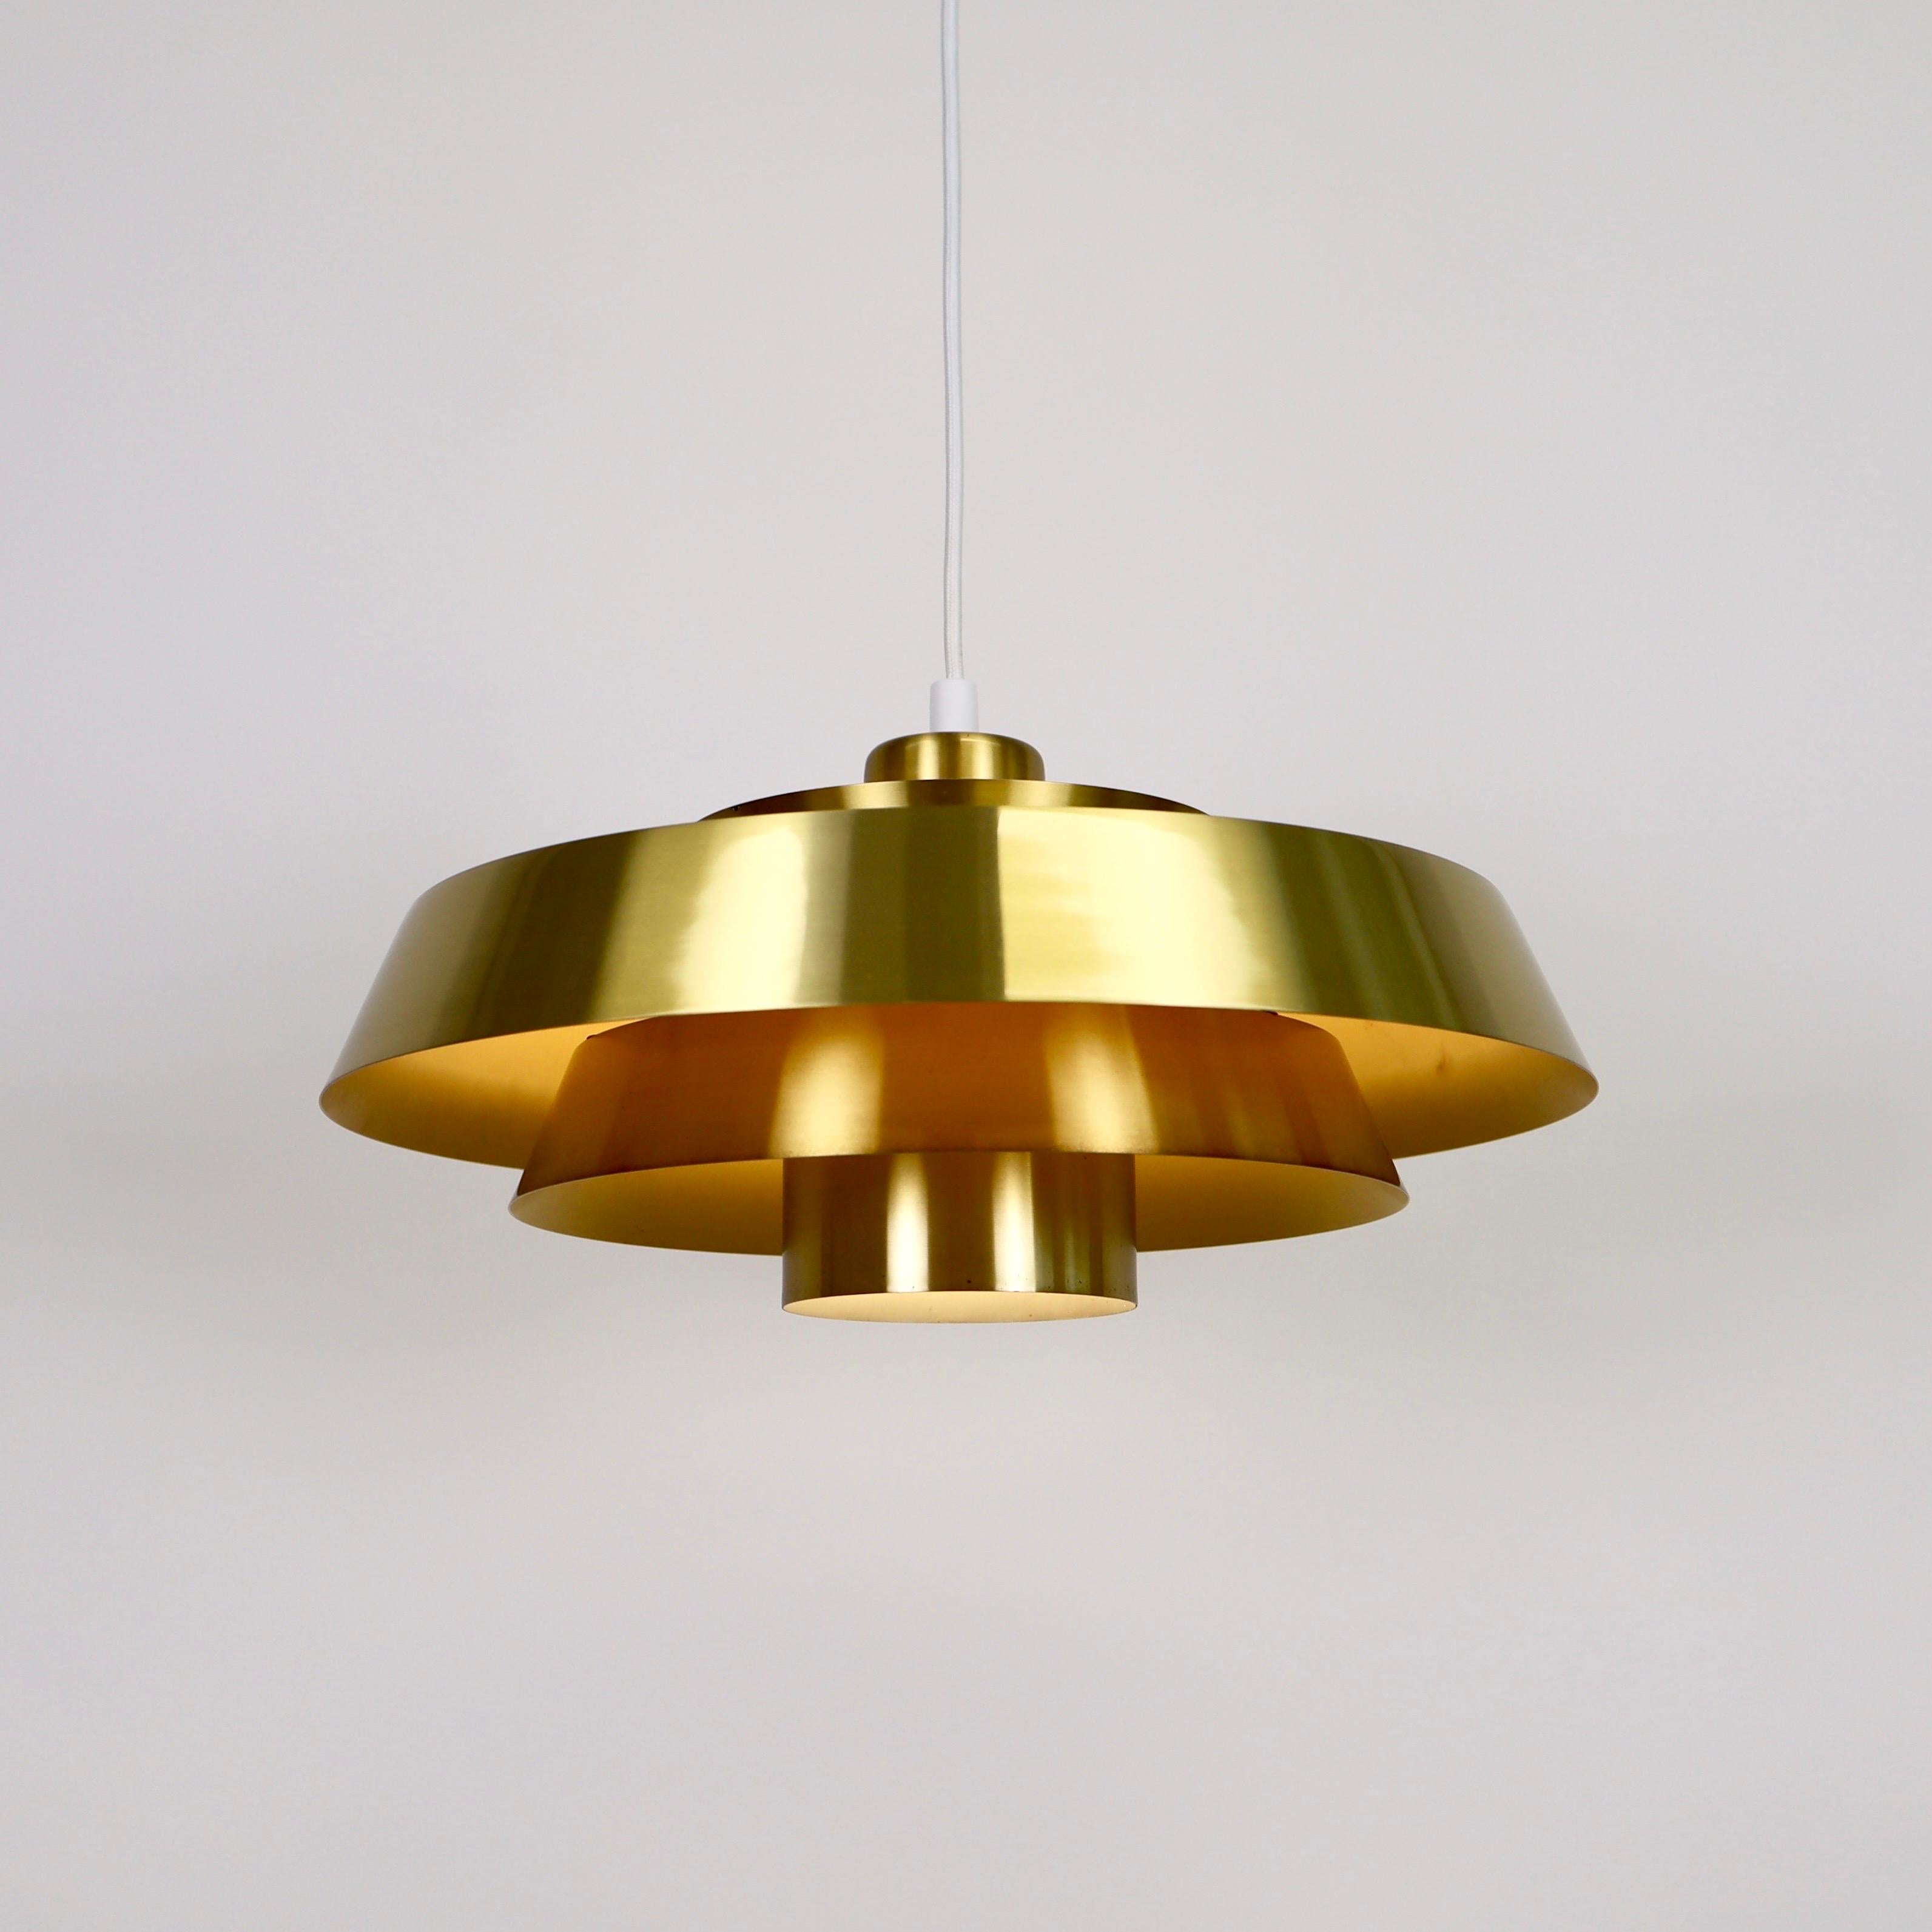 Mid-20th Century Brass Nova Pendant Light by Jo Hammerborg for Fog & Morup, 1960s, Denmark